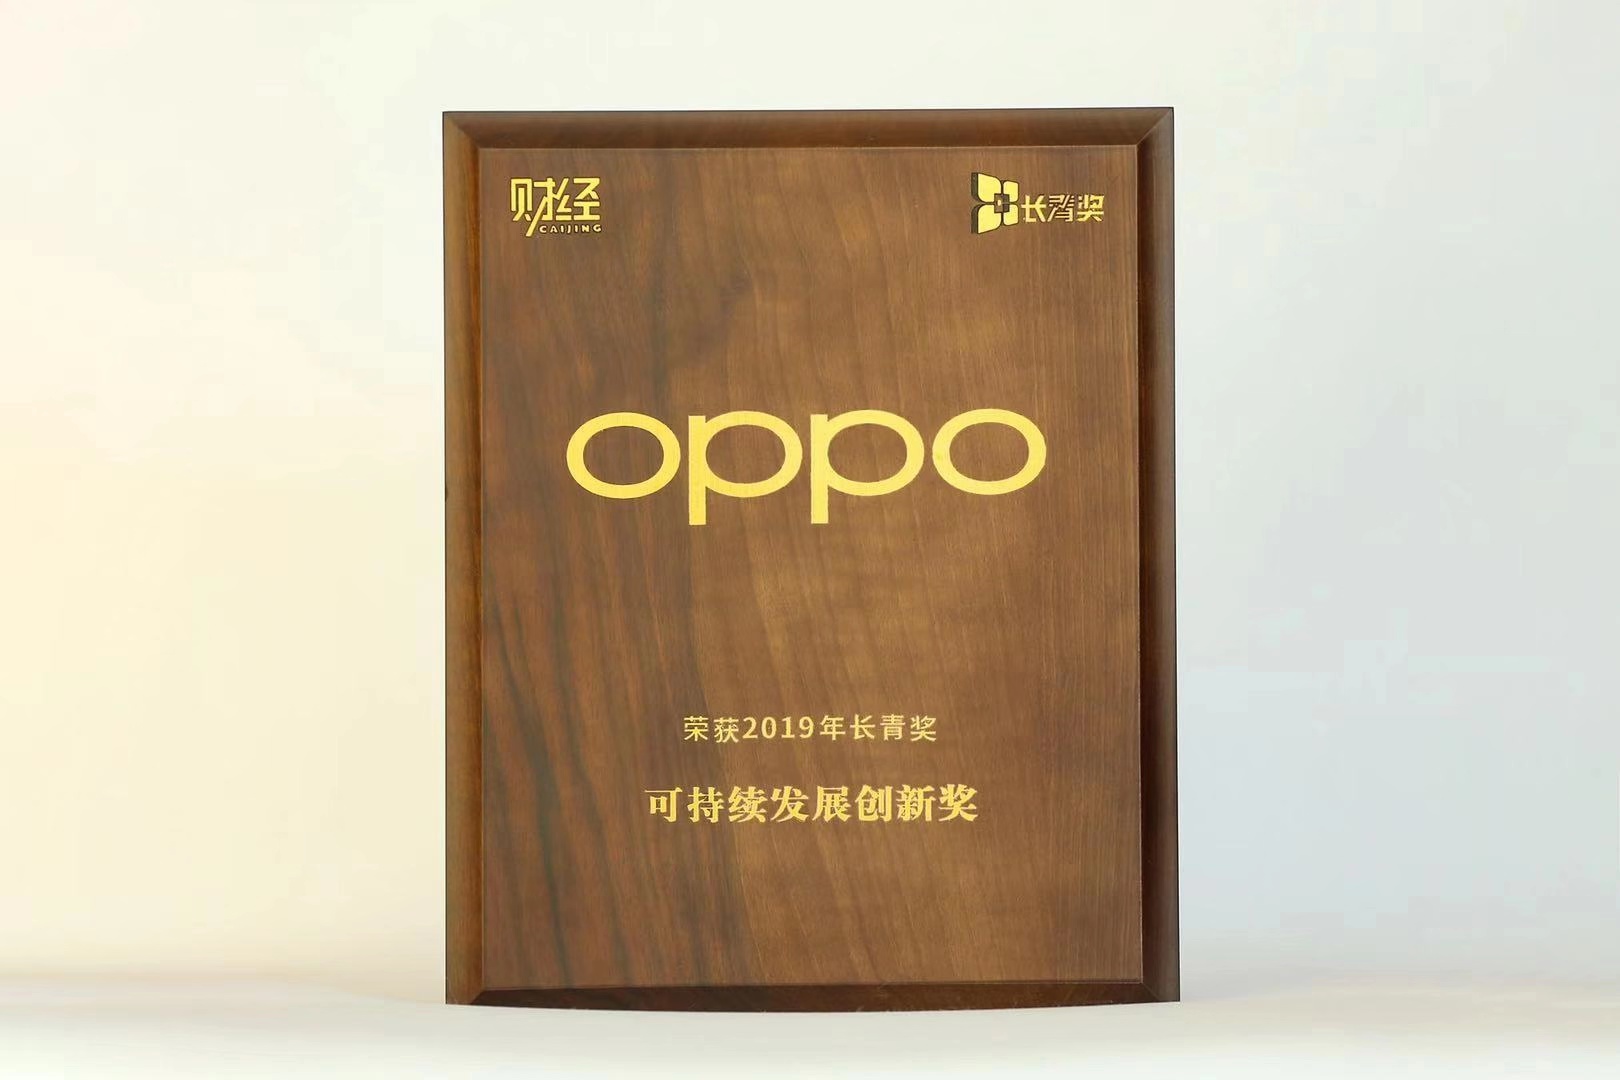 创新驱动持续发展 OPPO荣获“2019年长青奖•可持续发展创新奖”